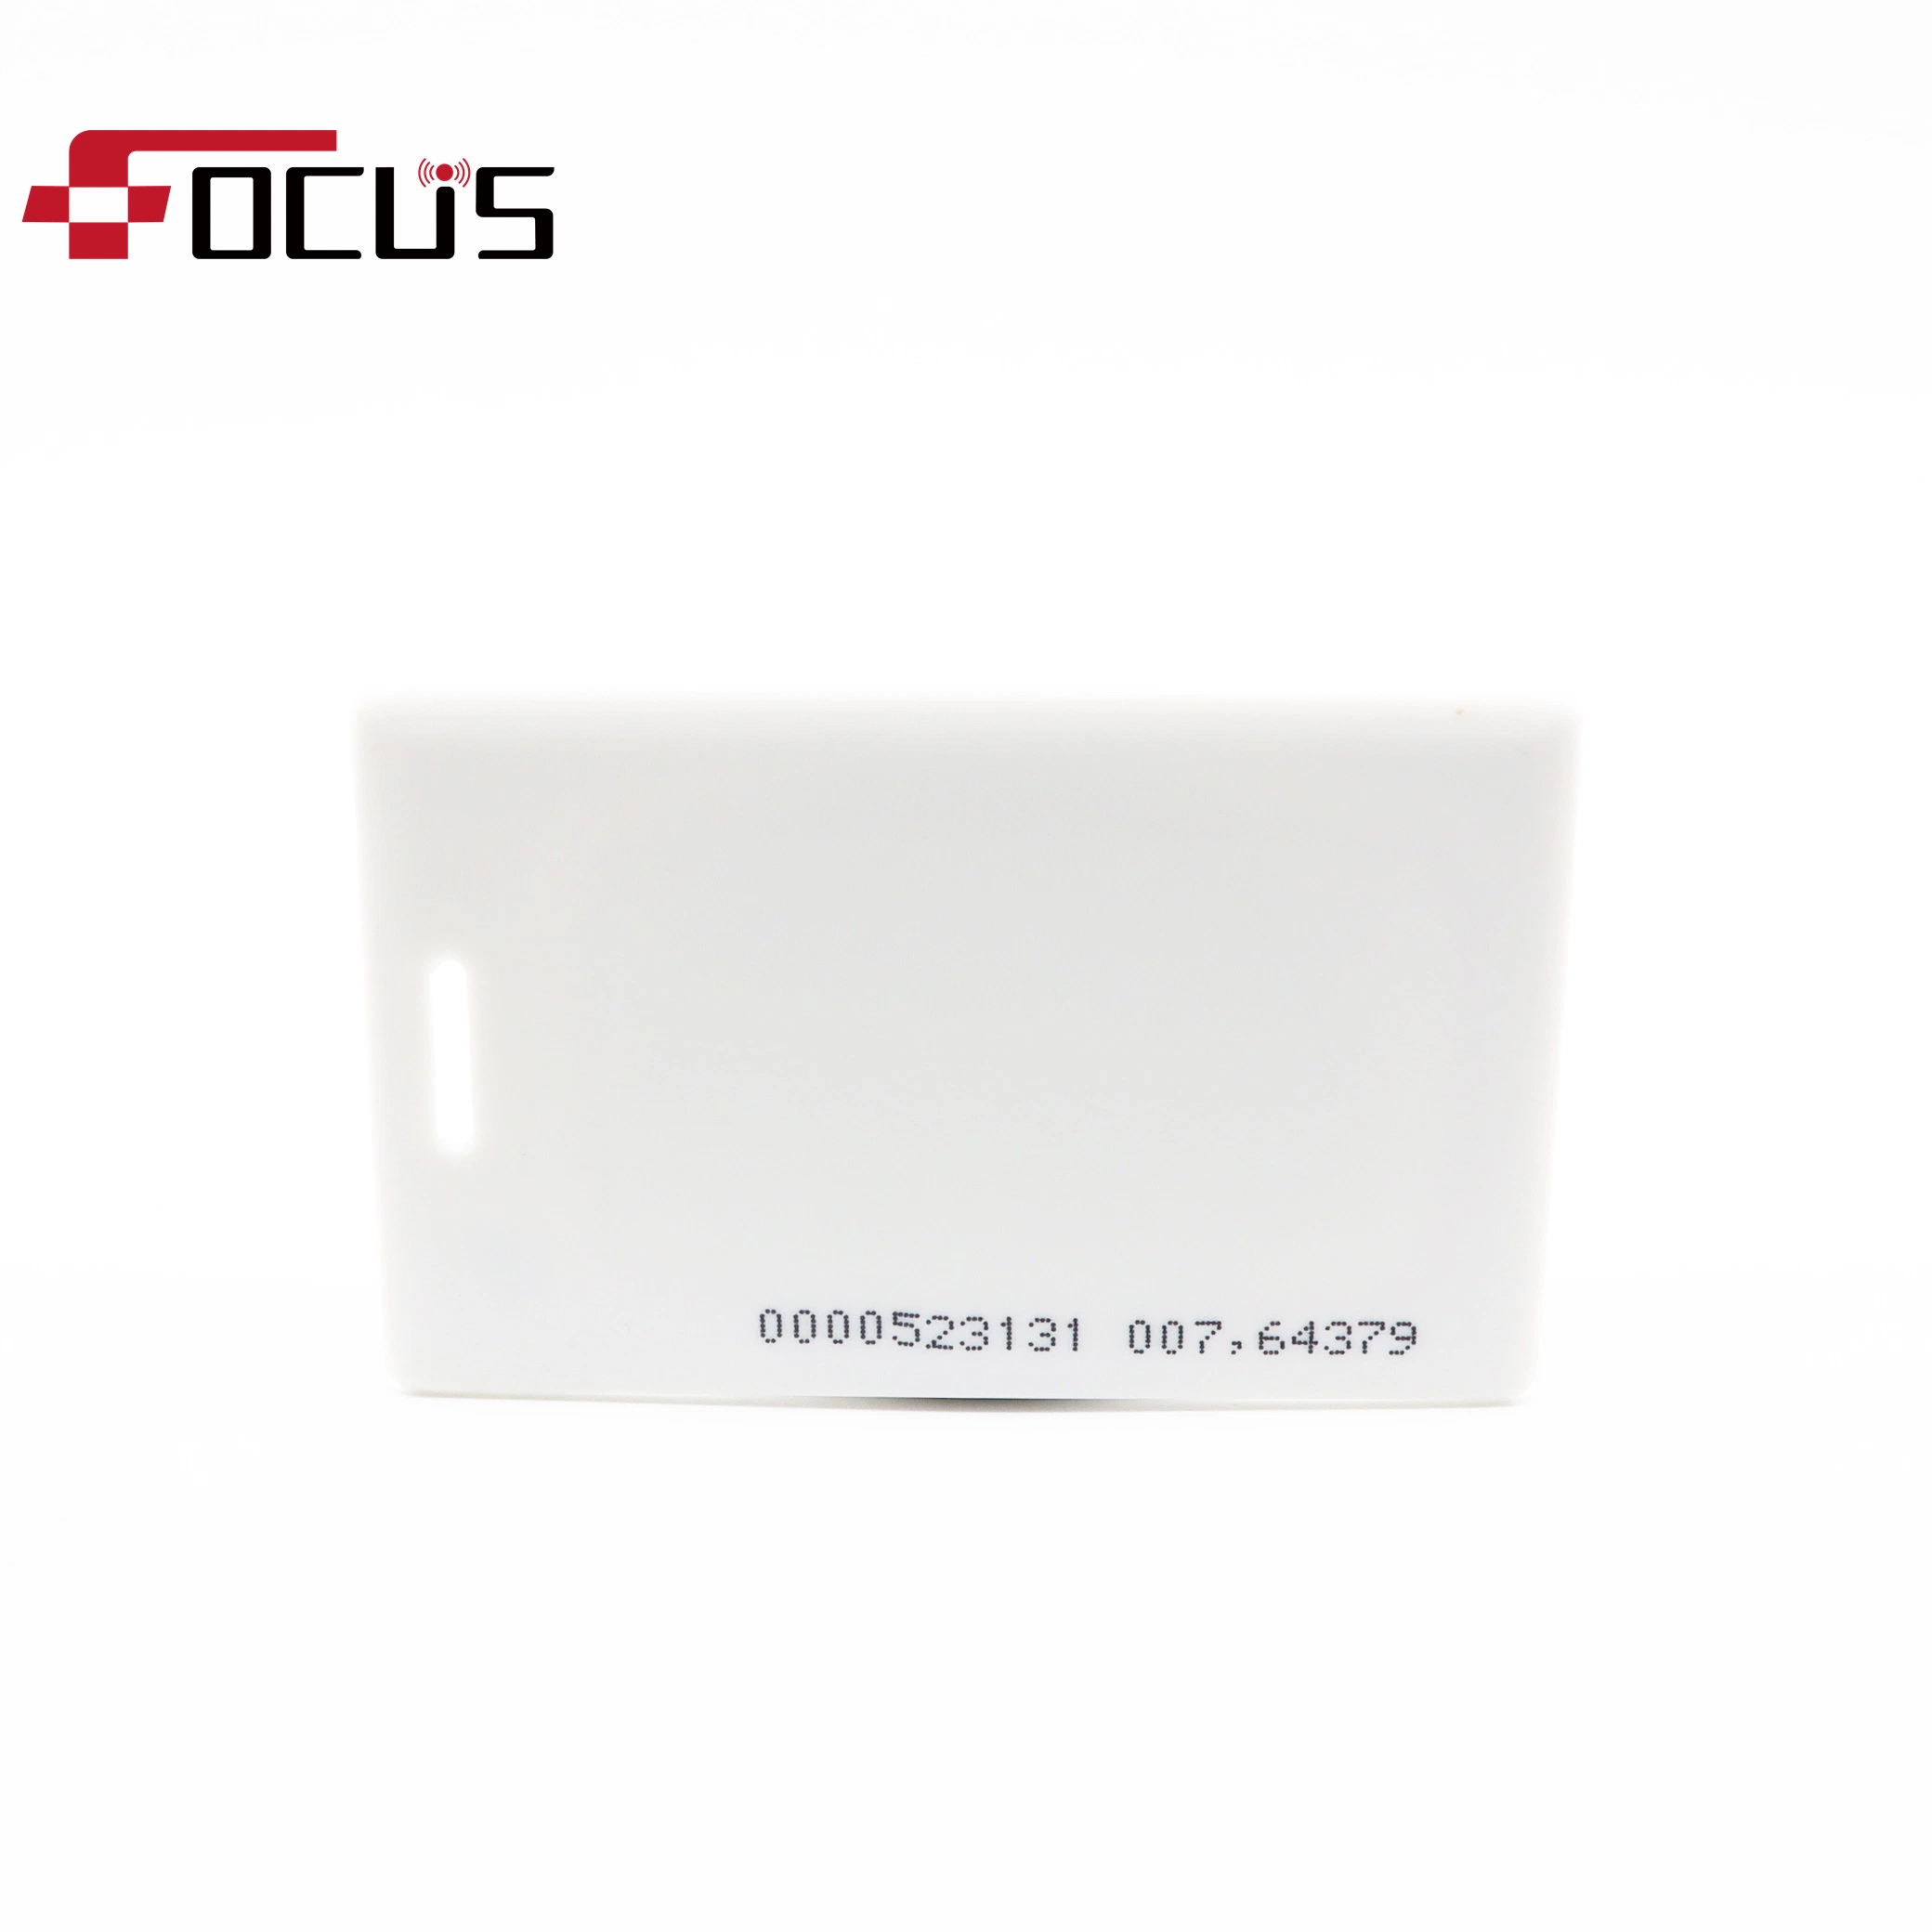 Tarjeta gruesa de identificación RFID de impresión a todo color para promoción/regalo/tarjeta de socio